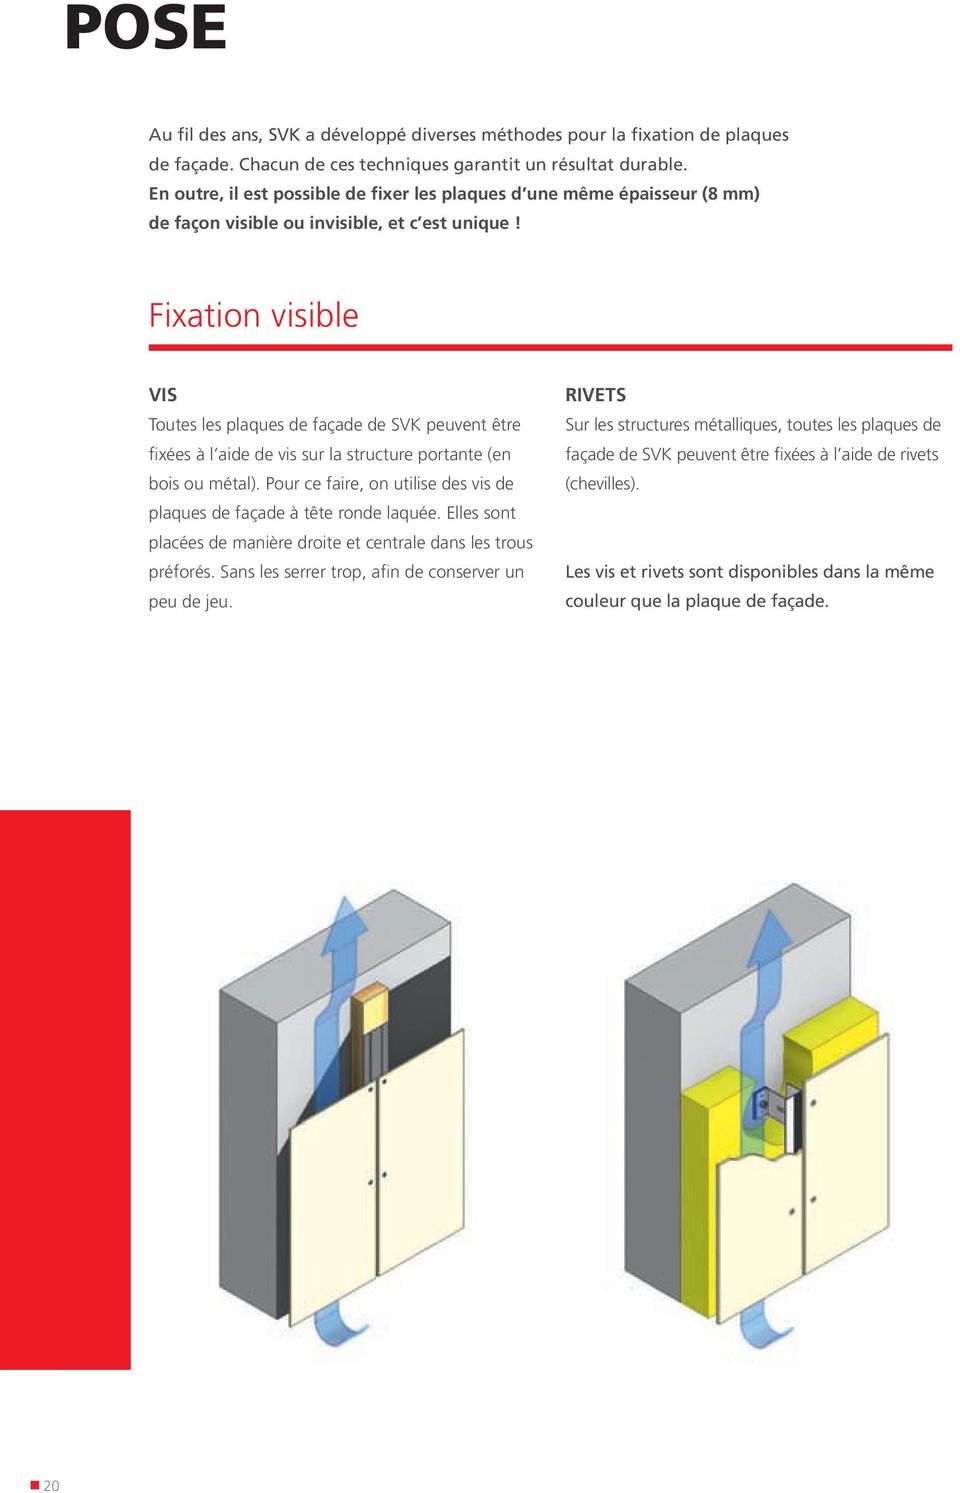 Fixation visible VIS Toutes les plaques de façade de SVK peuvent être fixées à l aide de vis sur la structure portante (en bois ou métal).